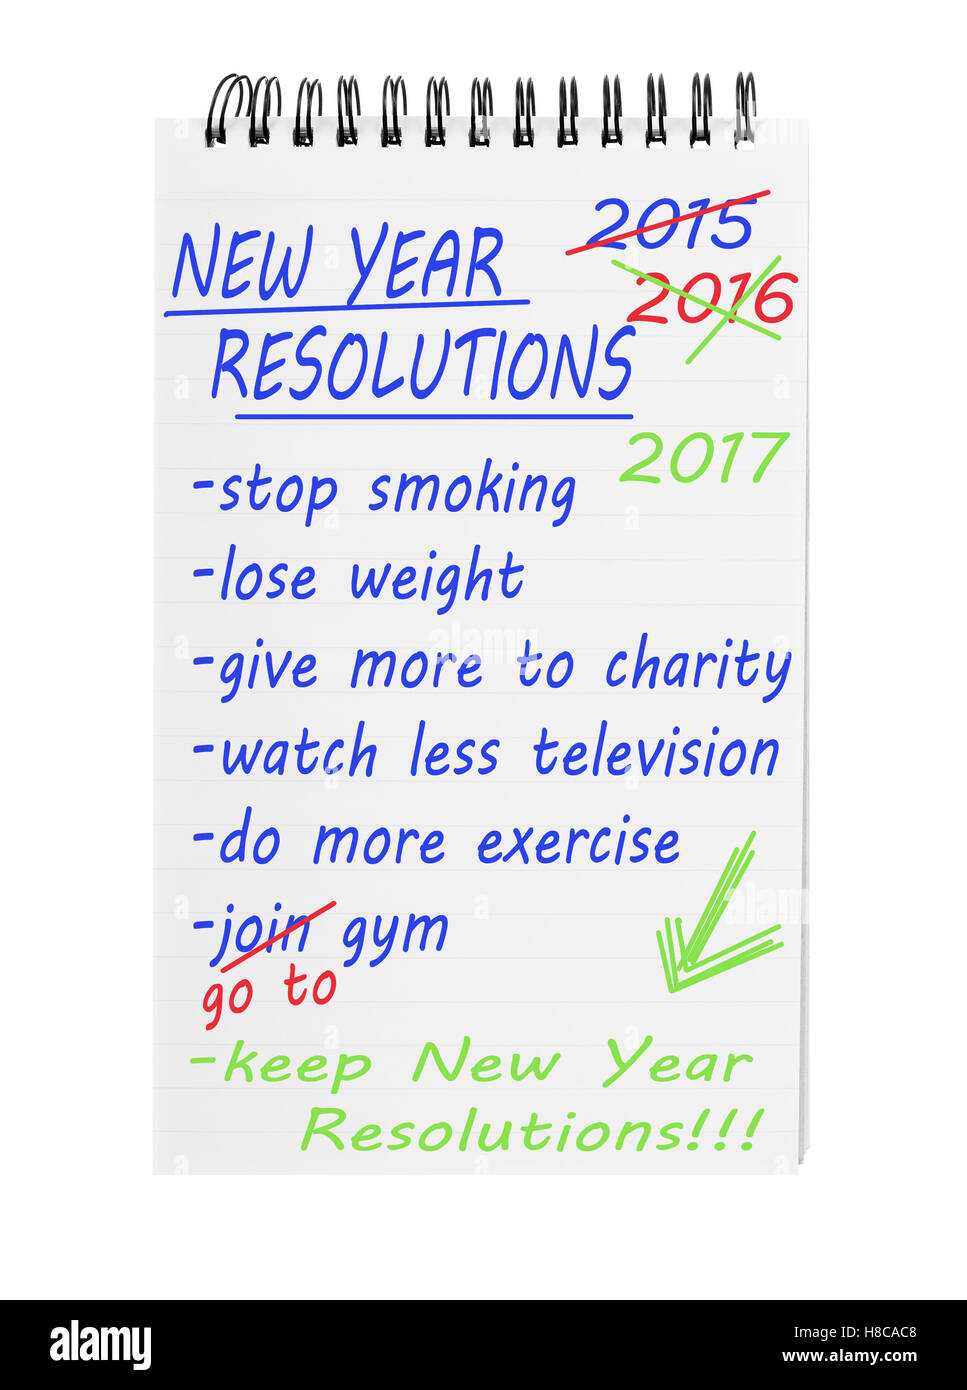 Résolutions pour la nouvelle année. De nouveau. Perdre du poids, faire plus d'exercice, de se mettre en forme, etc. des aspirations. Banque D'Images